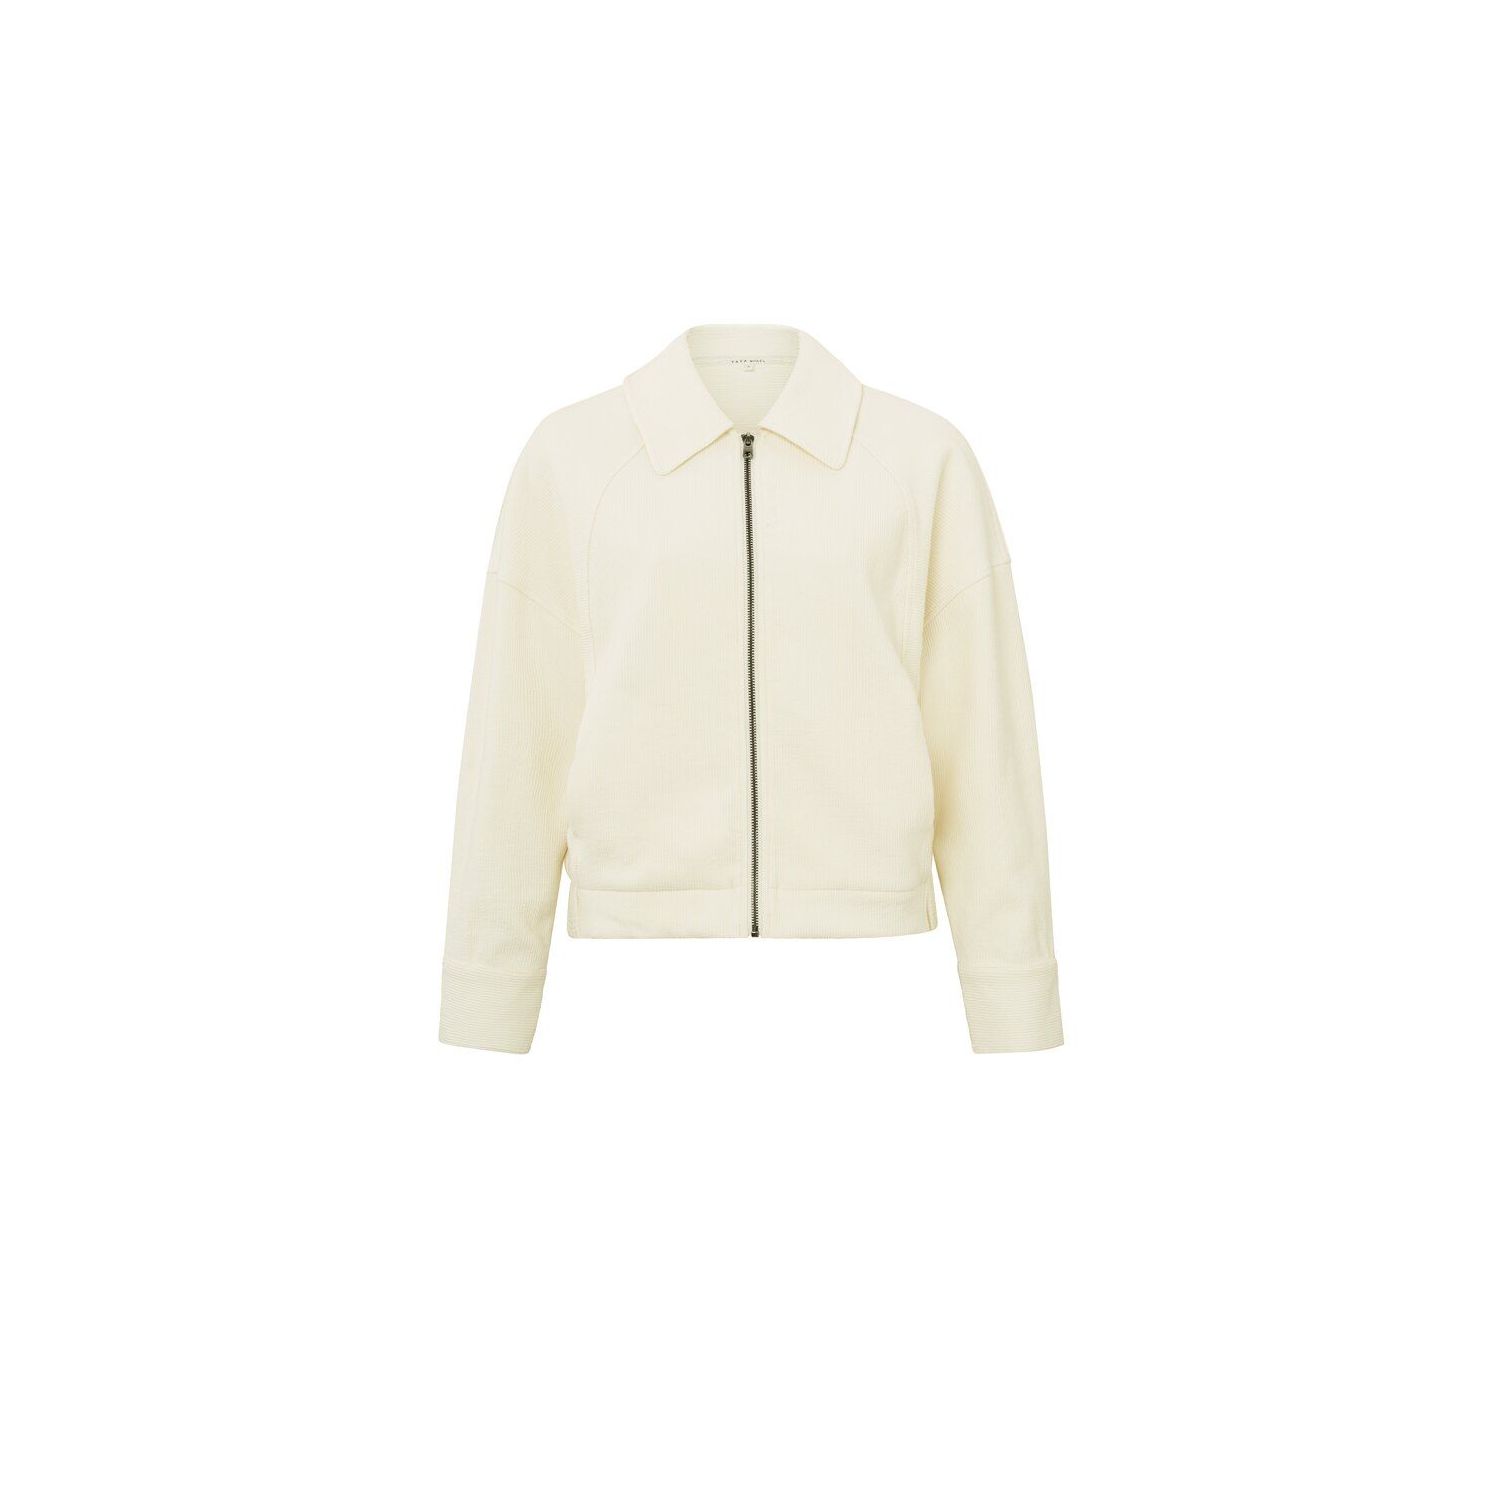 Yaya oversized jacket with collar ivory white